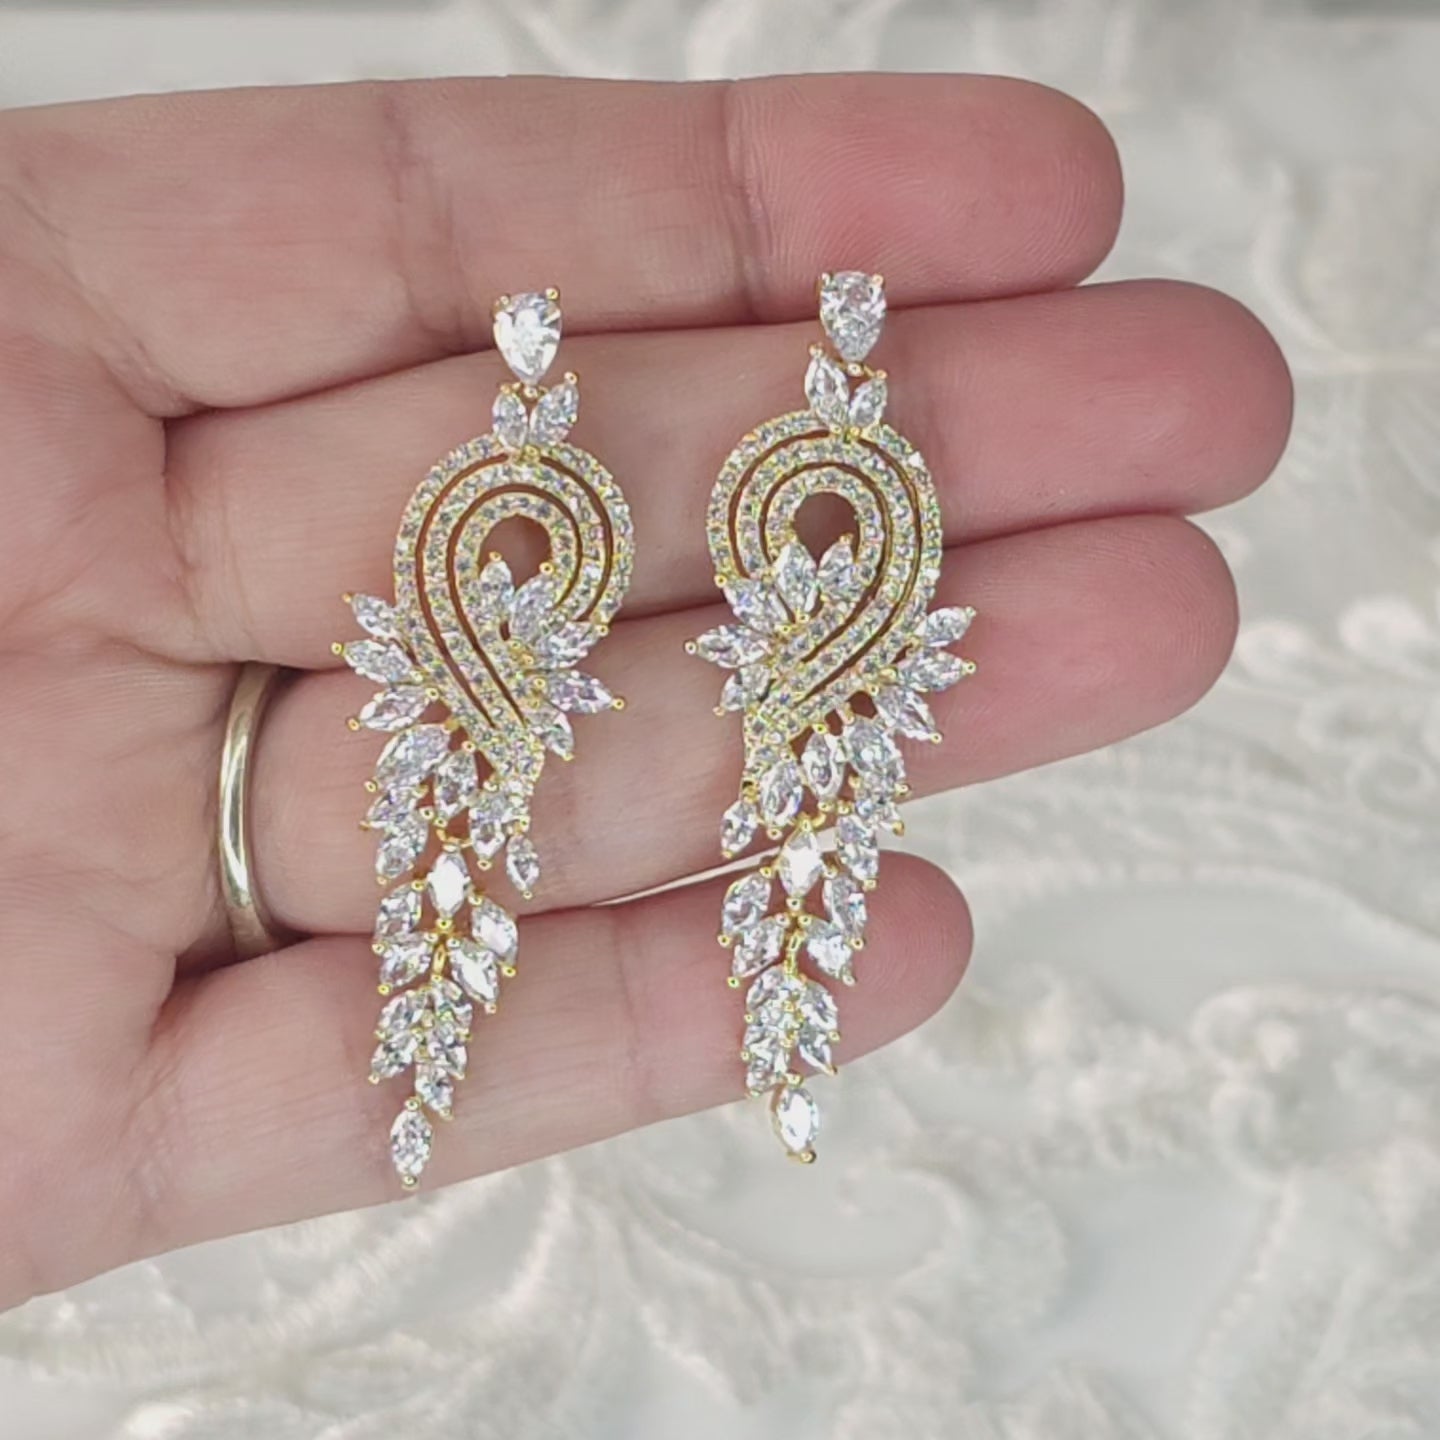 Statement wedding earrings